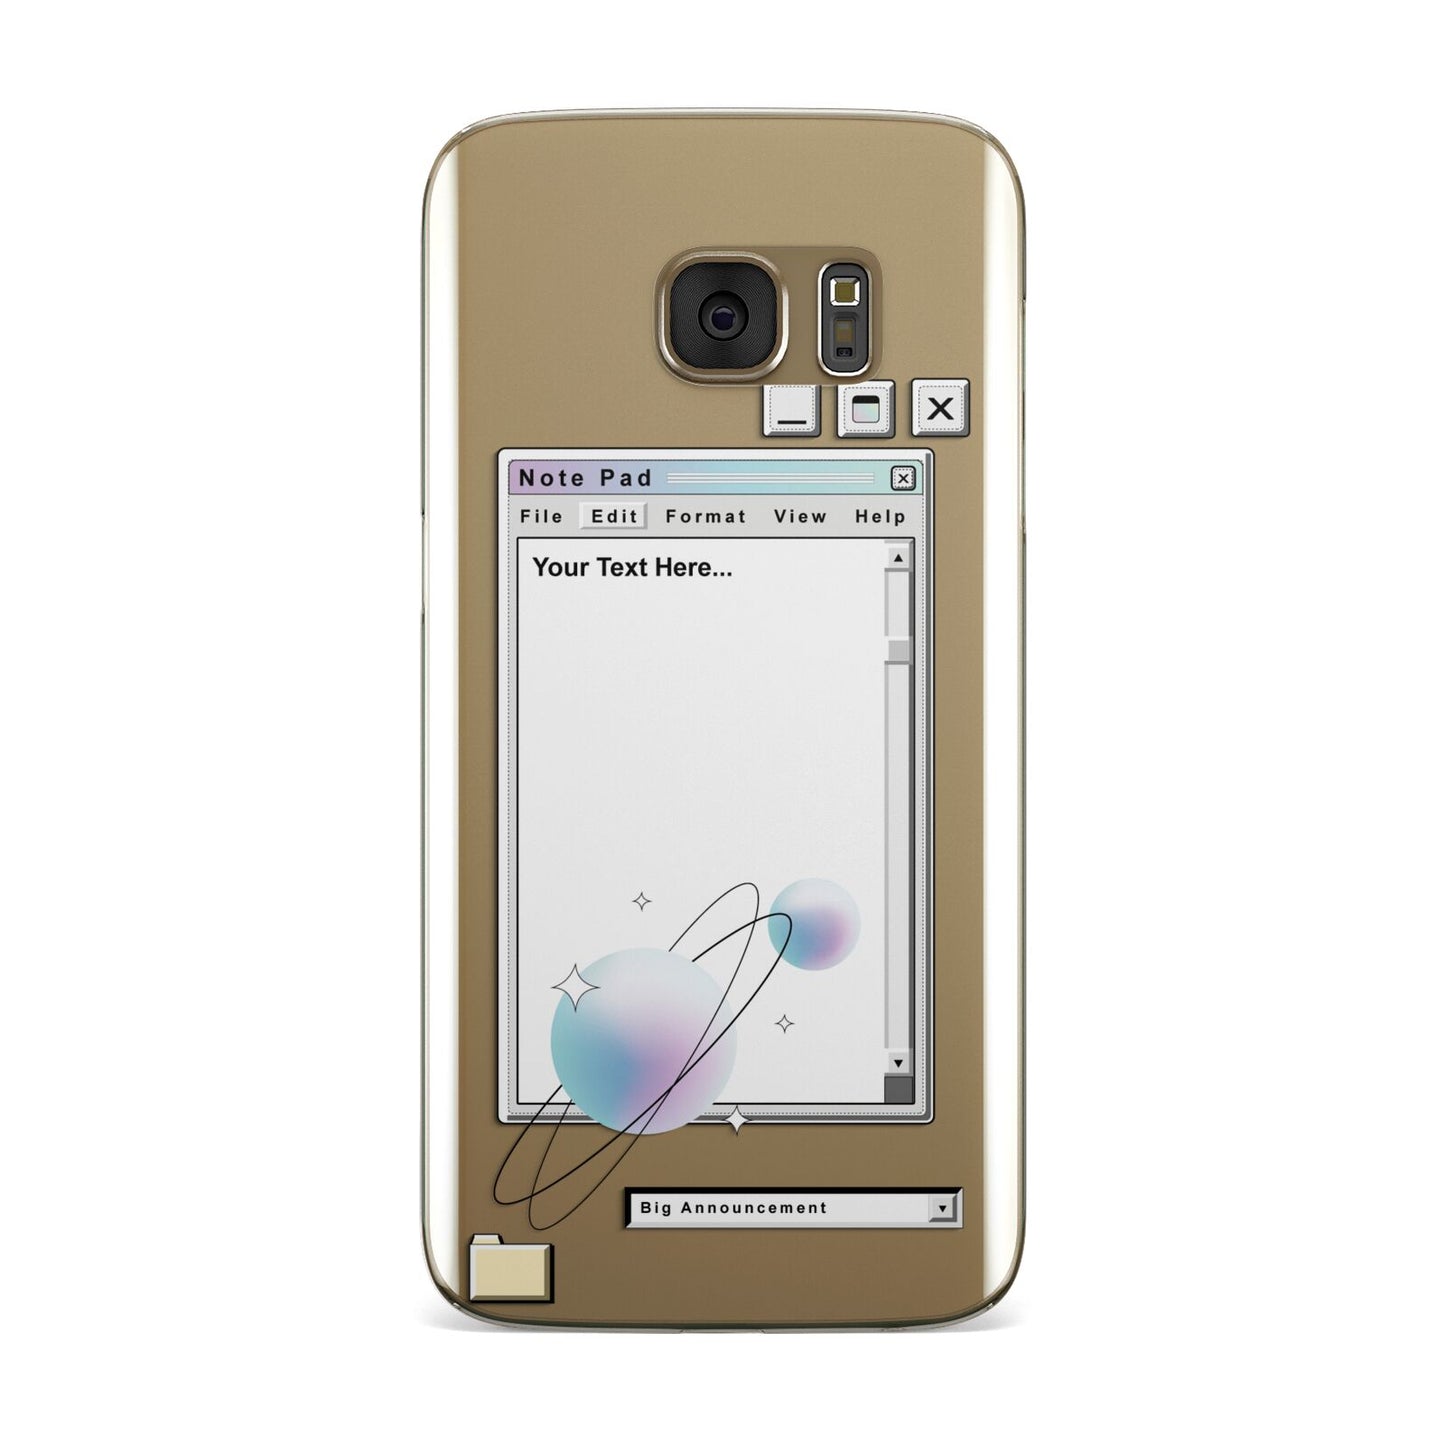 Retro Note Pad Samsung Galaxy Case